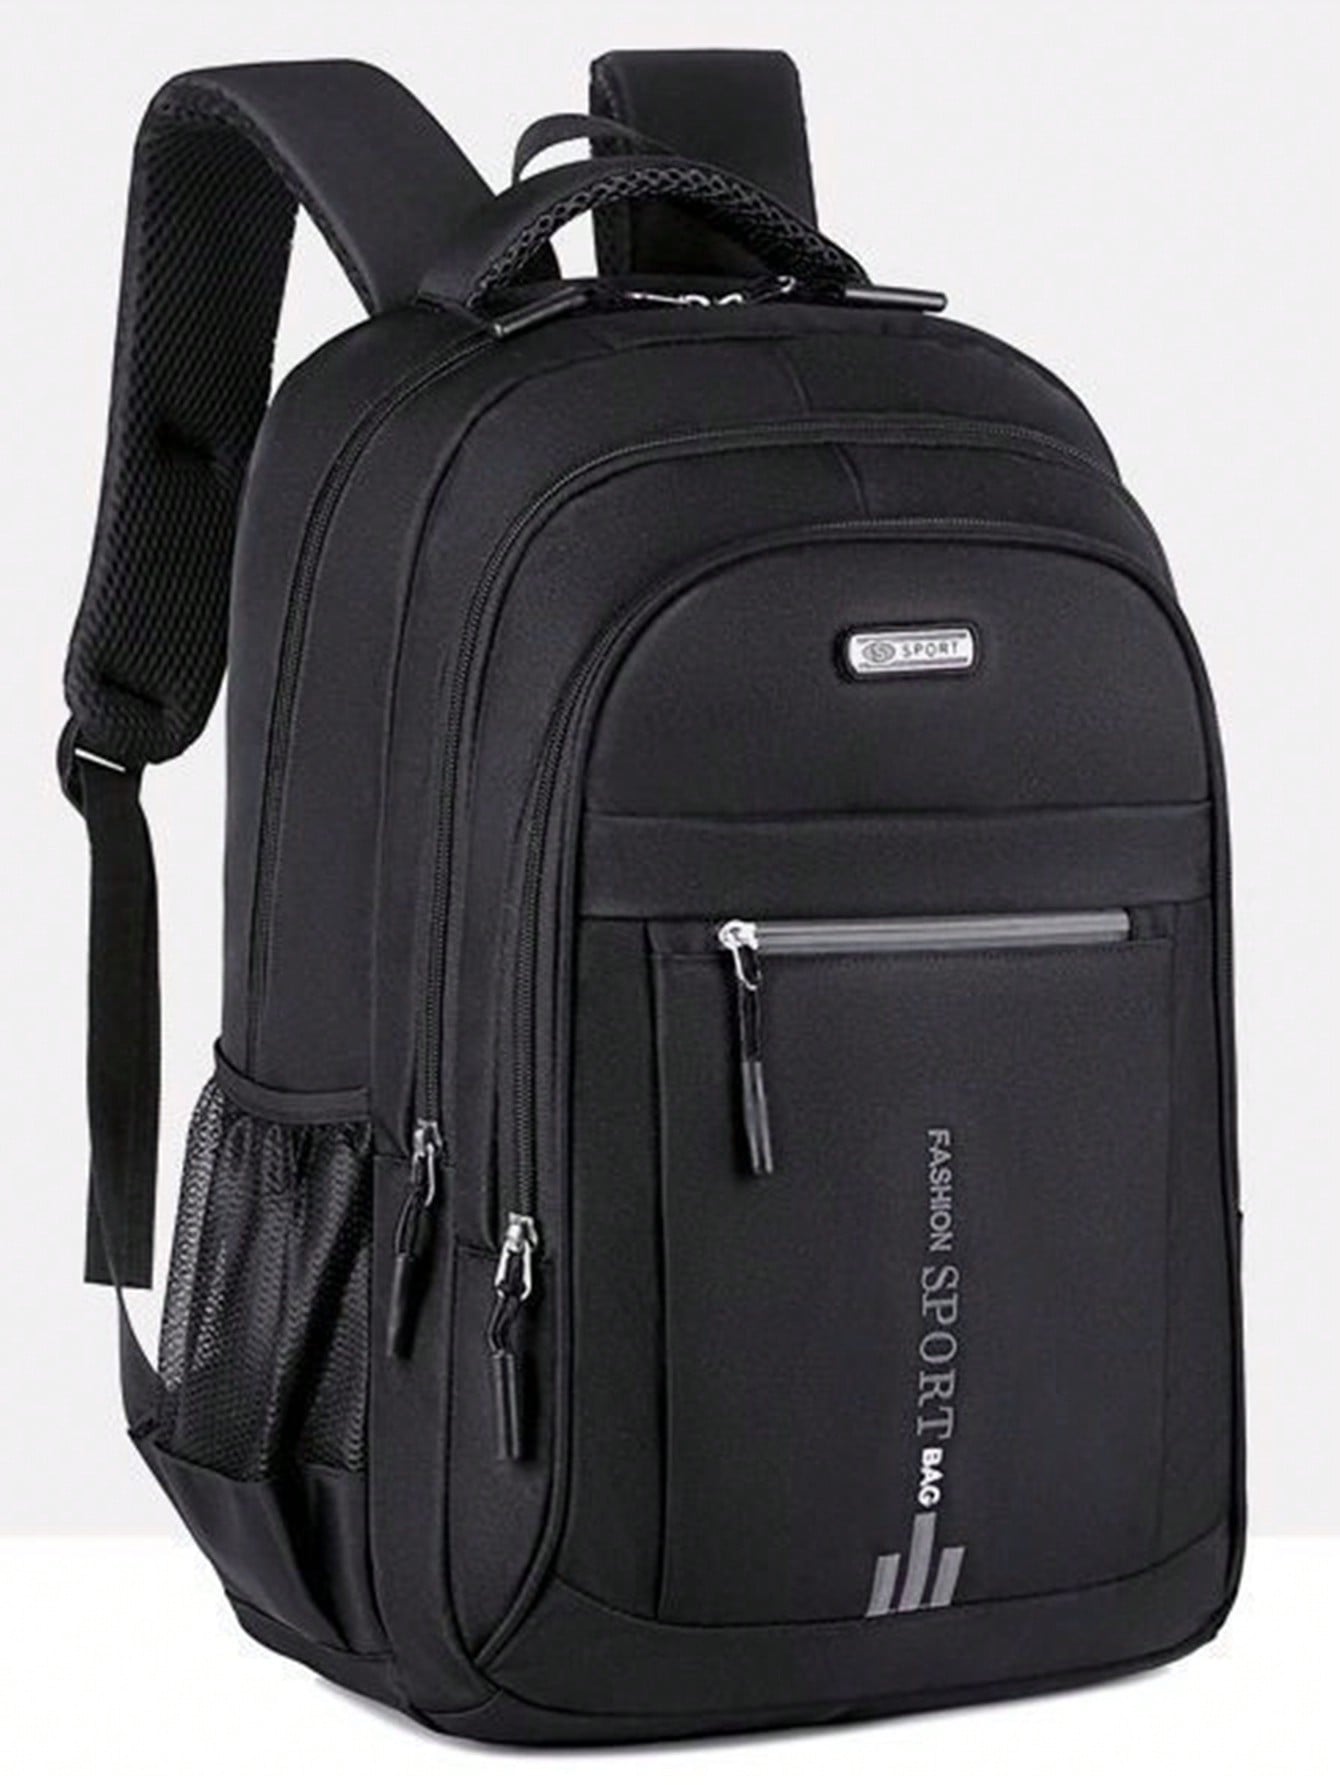 Рюкзак для выездного рабочего багажа, черный дорожный рюкзак большой вместимости черный